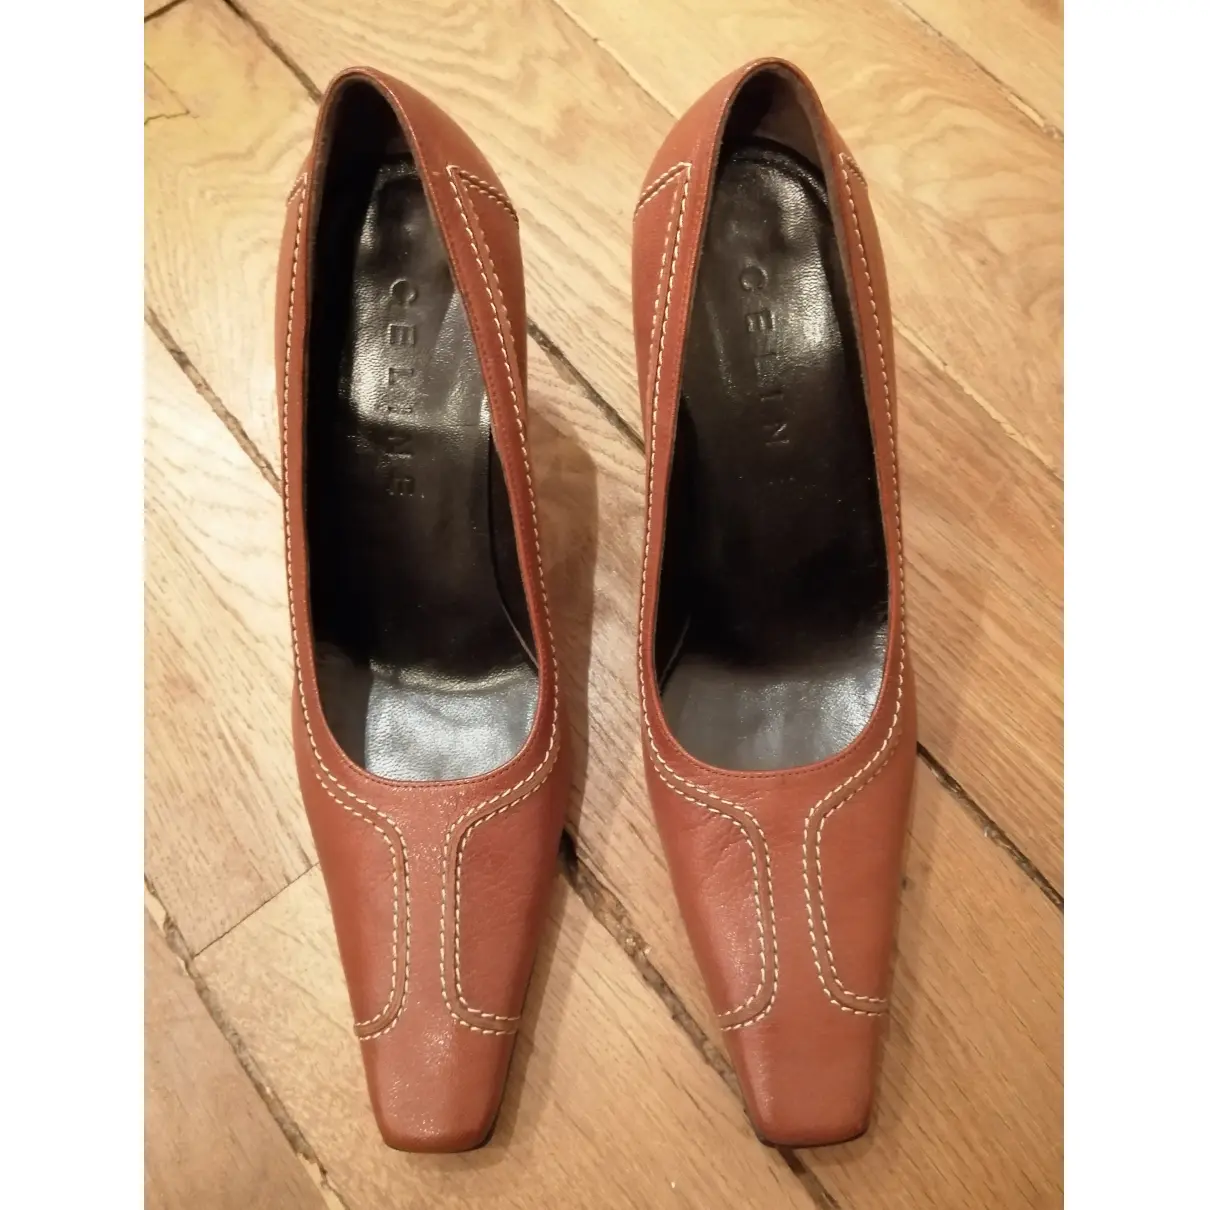 Buy Celine Triangle Heel leather heels online